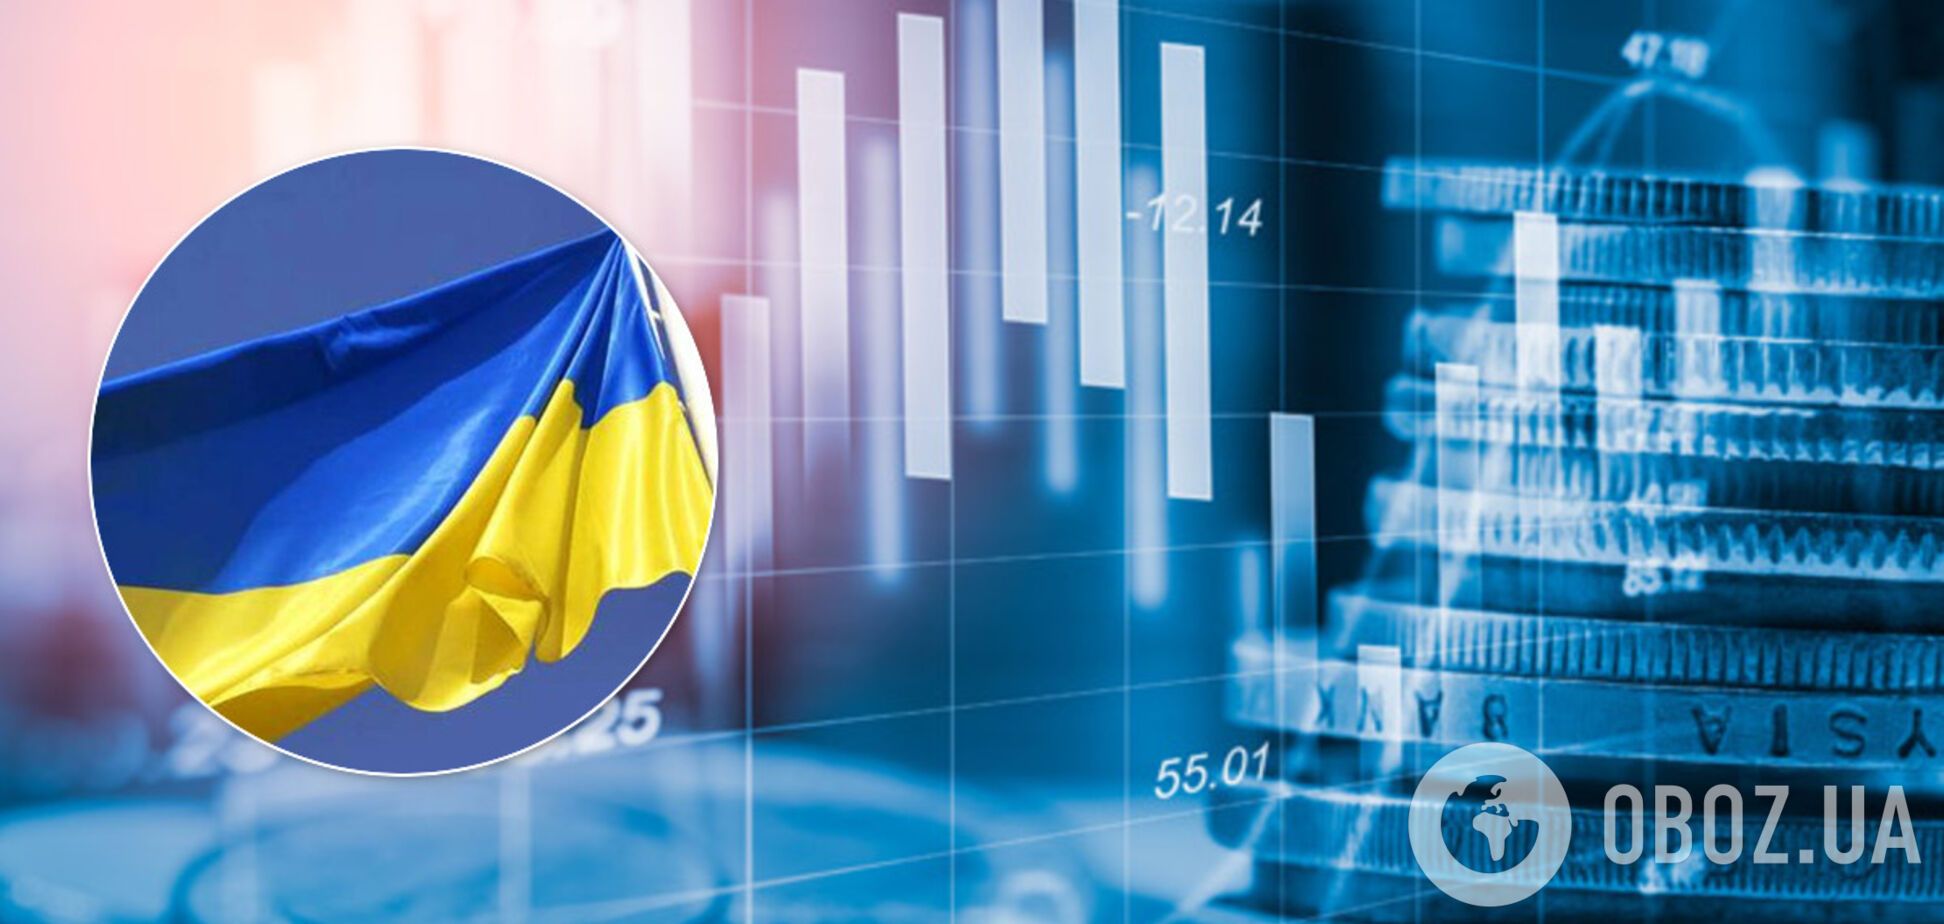 Стало известно, когда экономика Украины оправится от коронакризиса